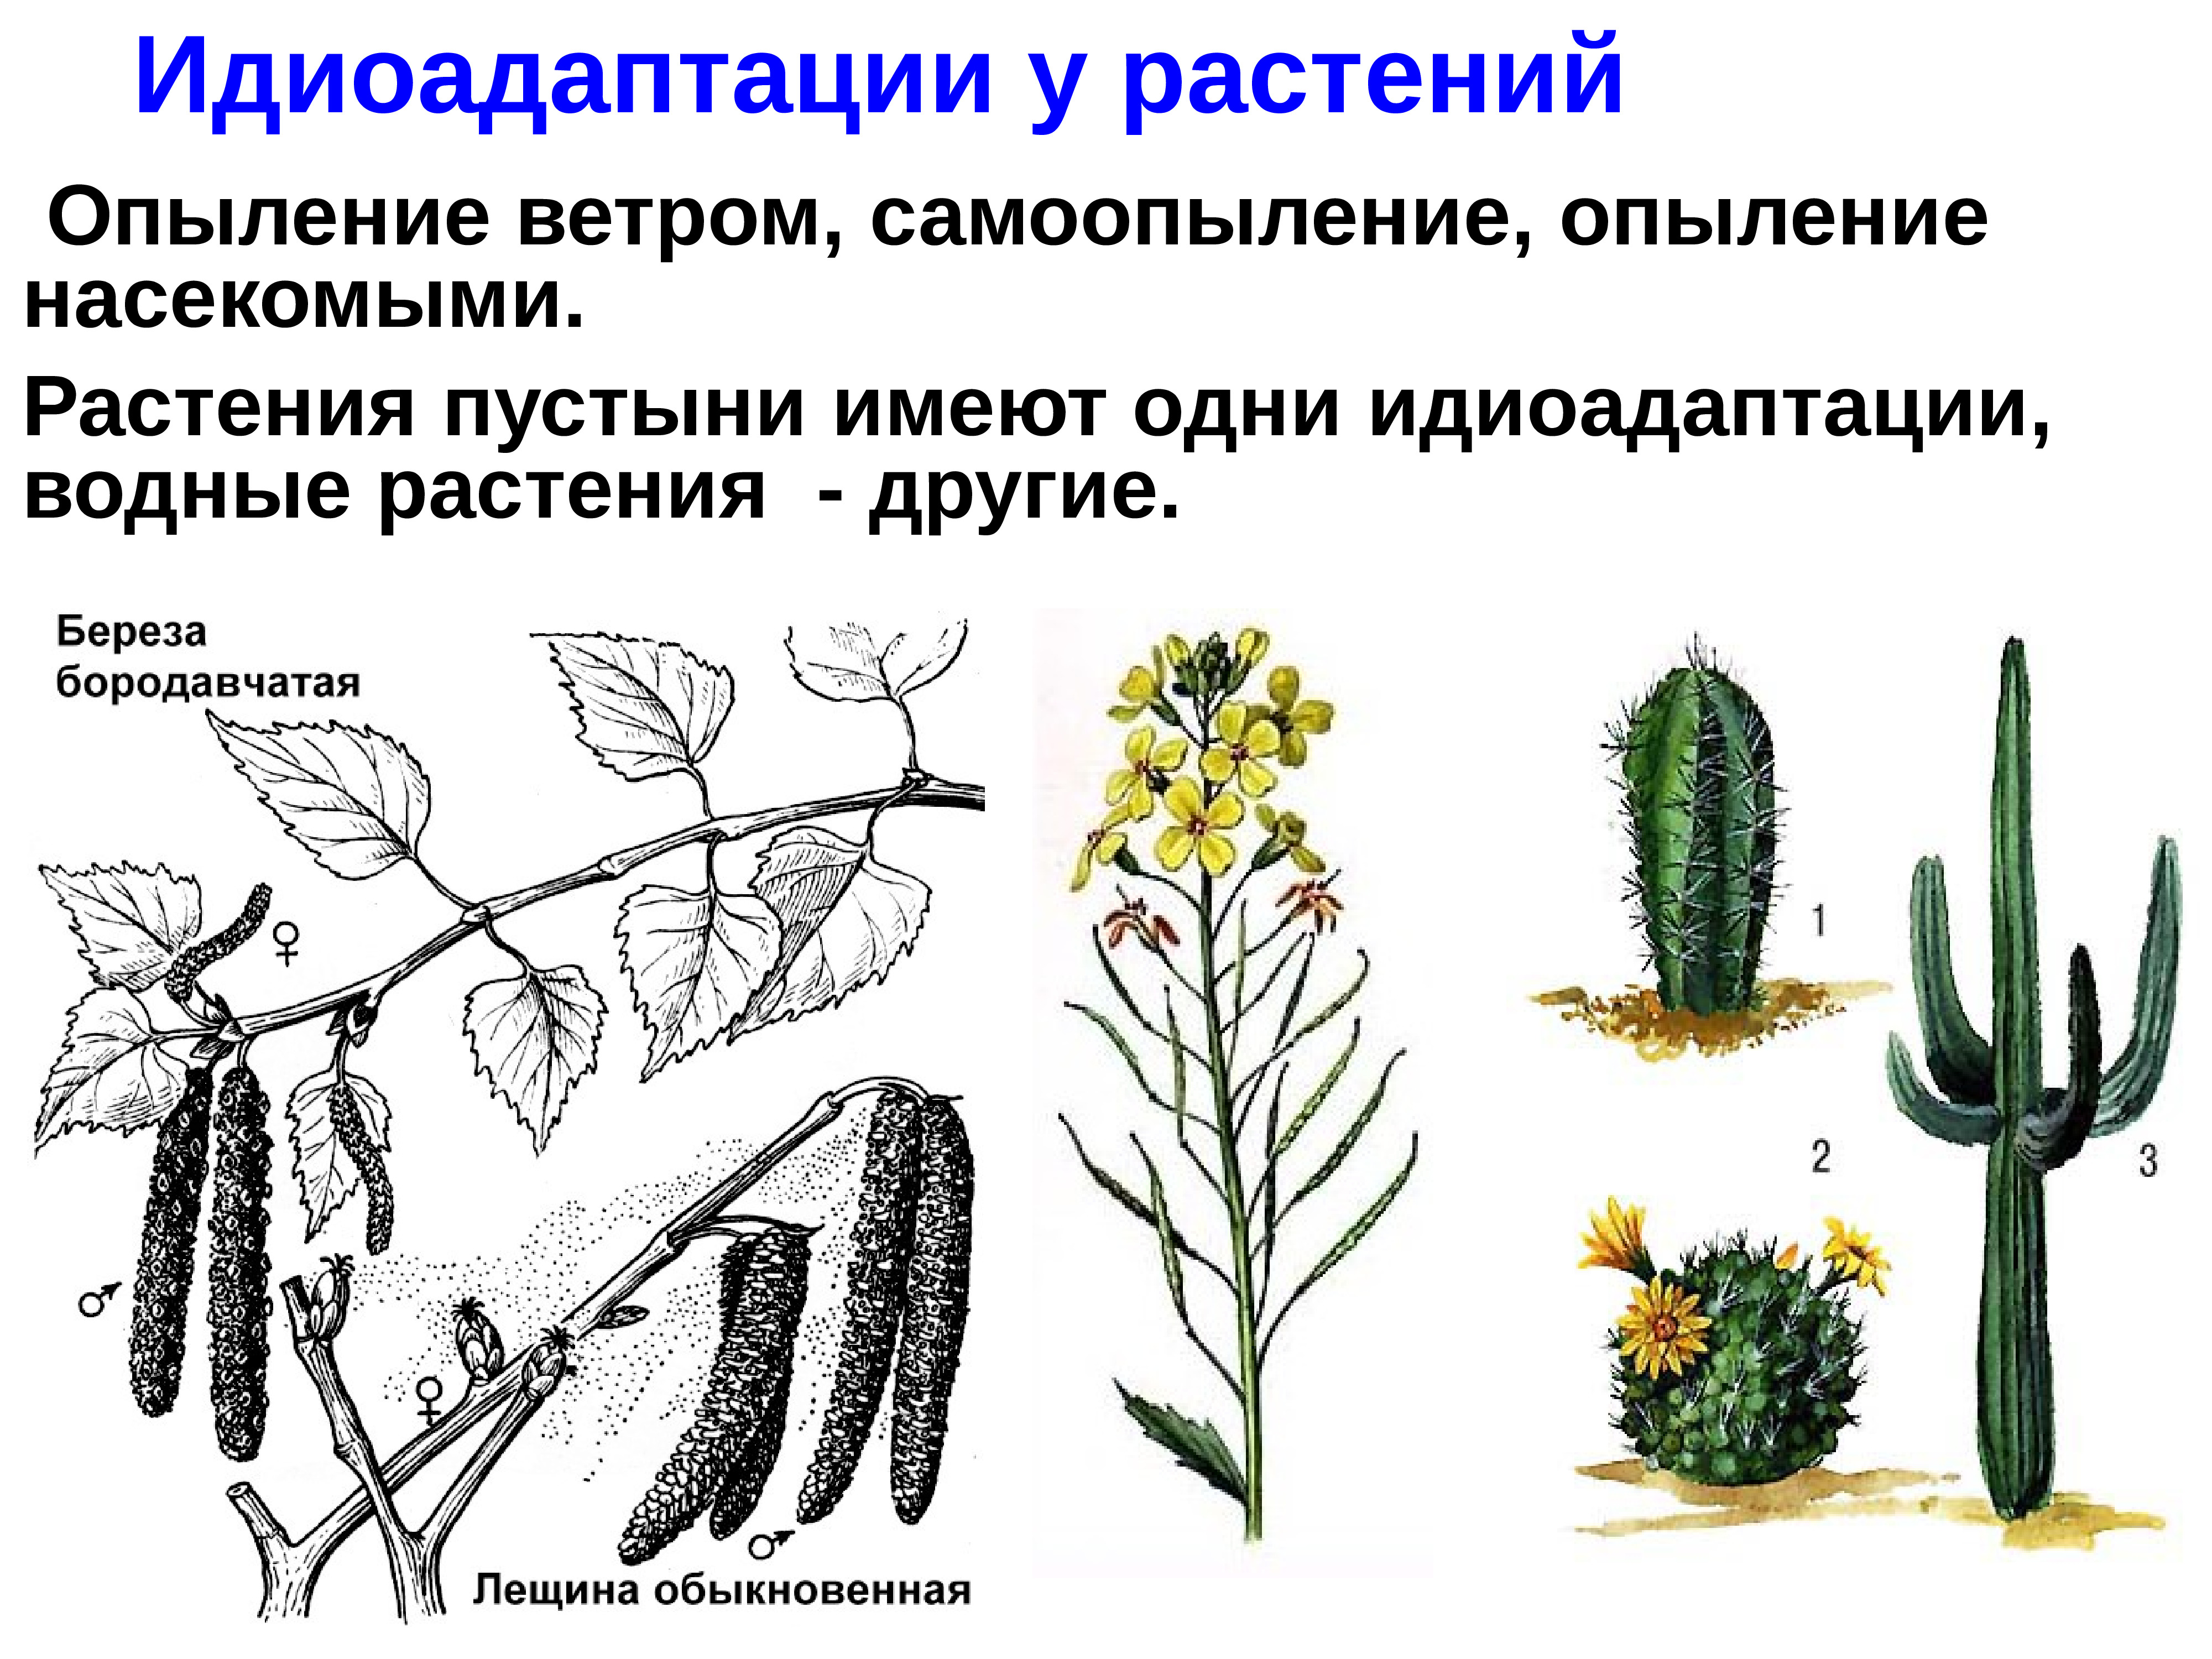 Ароморфоз покрытосеменных примеры. Идиоадаптация у растений. Примеры идиоадаптации у растений. Идиоадаптации цветковых растений. Идиоадаптация мохообразных.